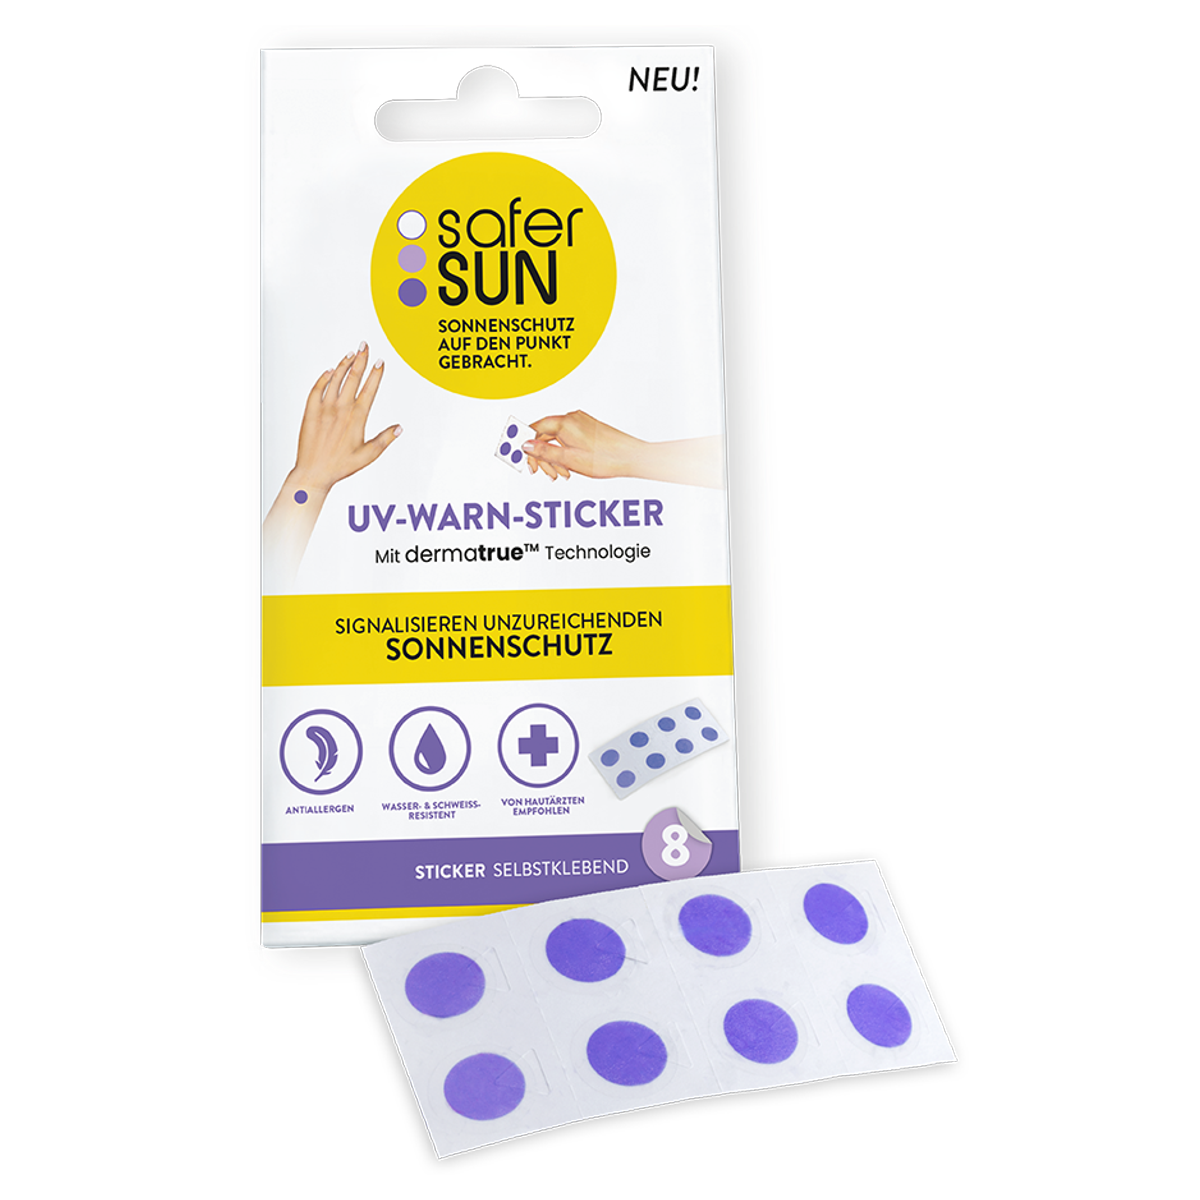 Safersun UV-Warn-Sticker - Sonnenschutz auf den Punkt gebracht